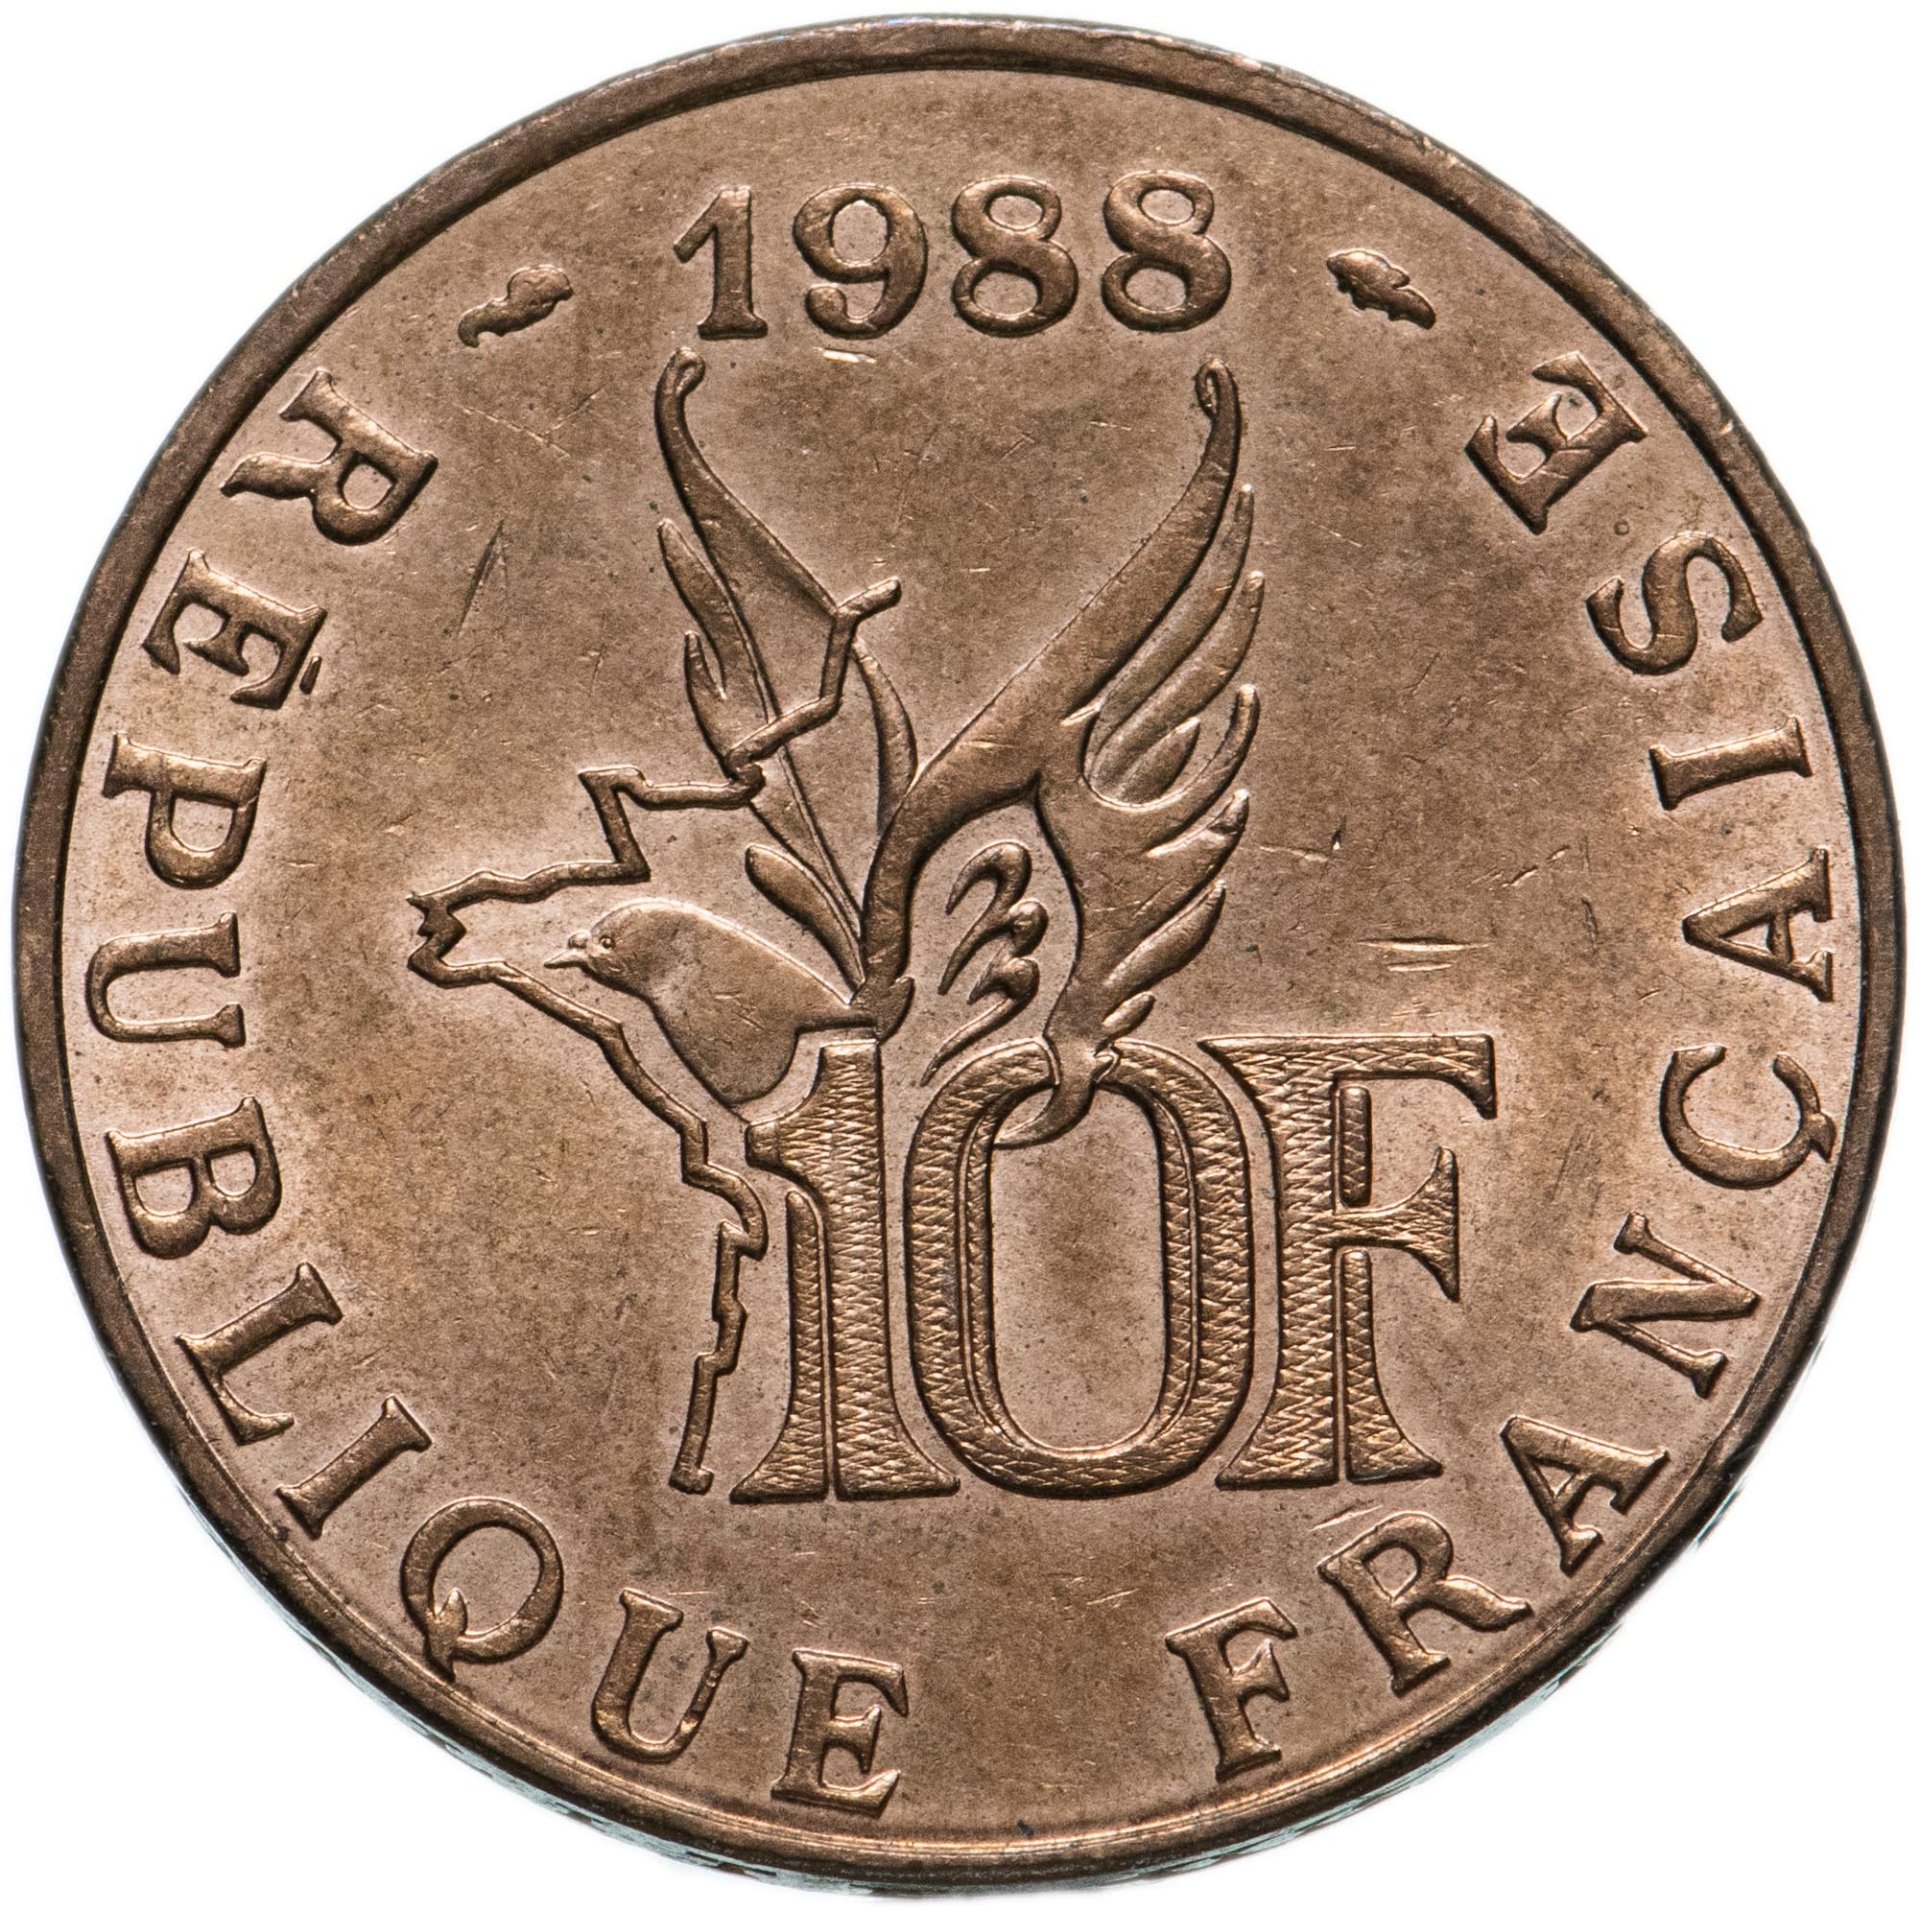 French 10. 10 Франков 1988. 10 Франков Франция. 10 Франков 1988-2001 Франция. Франки монеты Франции.